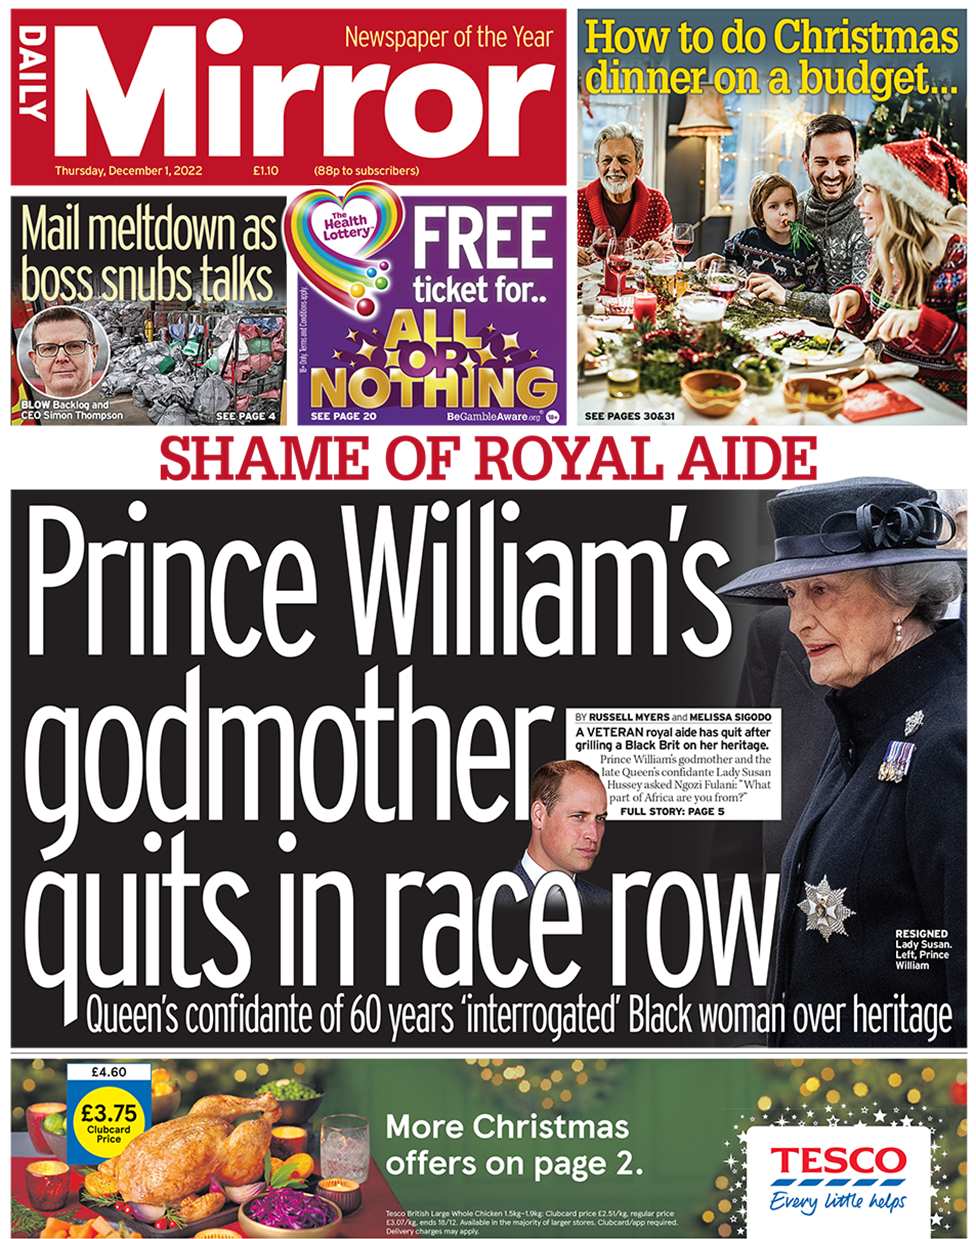 Заголовок на первой странице Daily Mirror гласит: «Крестная мать принца Уильяма увольняется в race row'